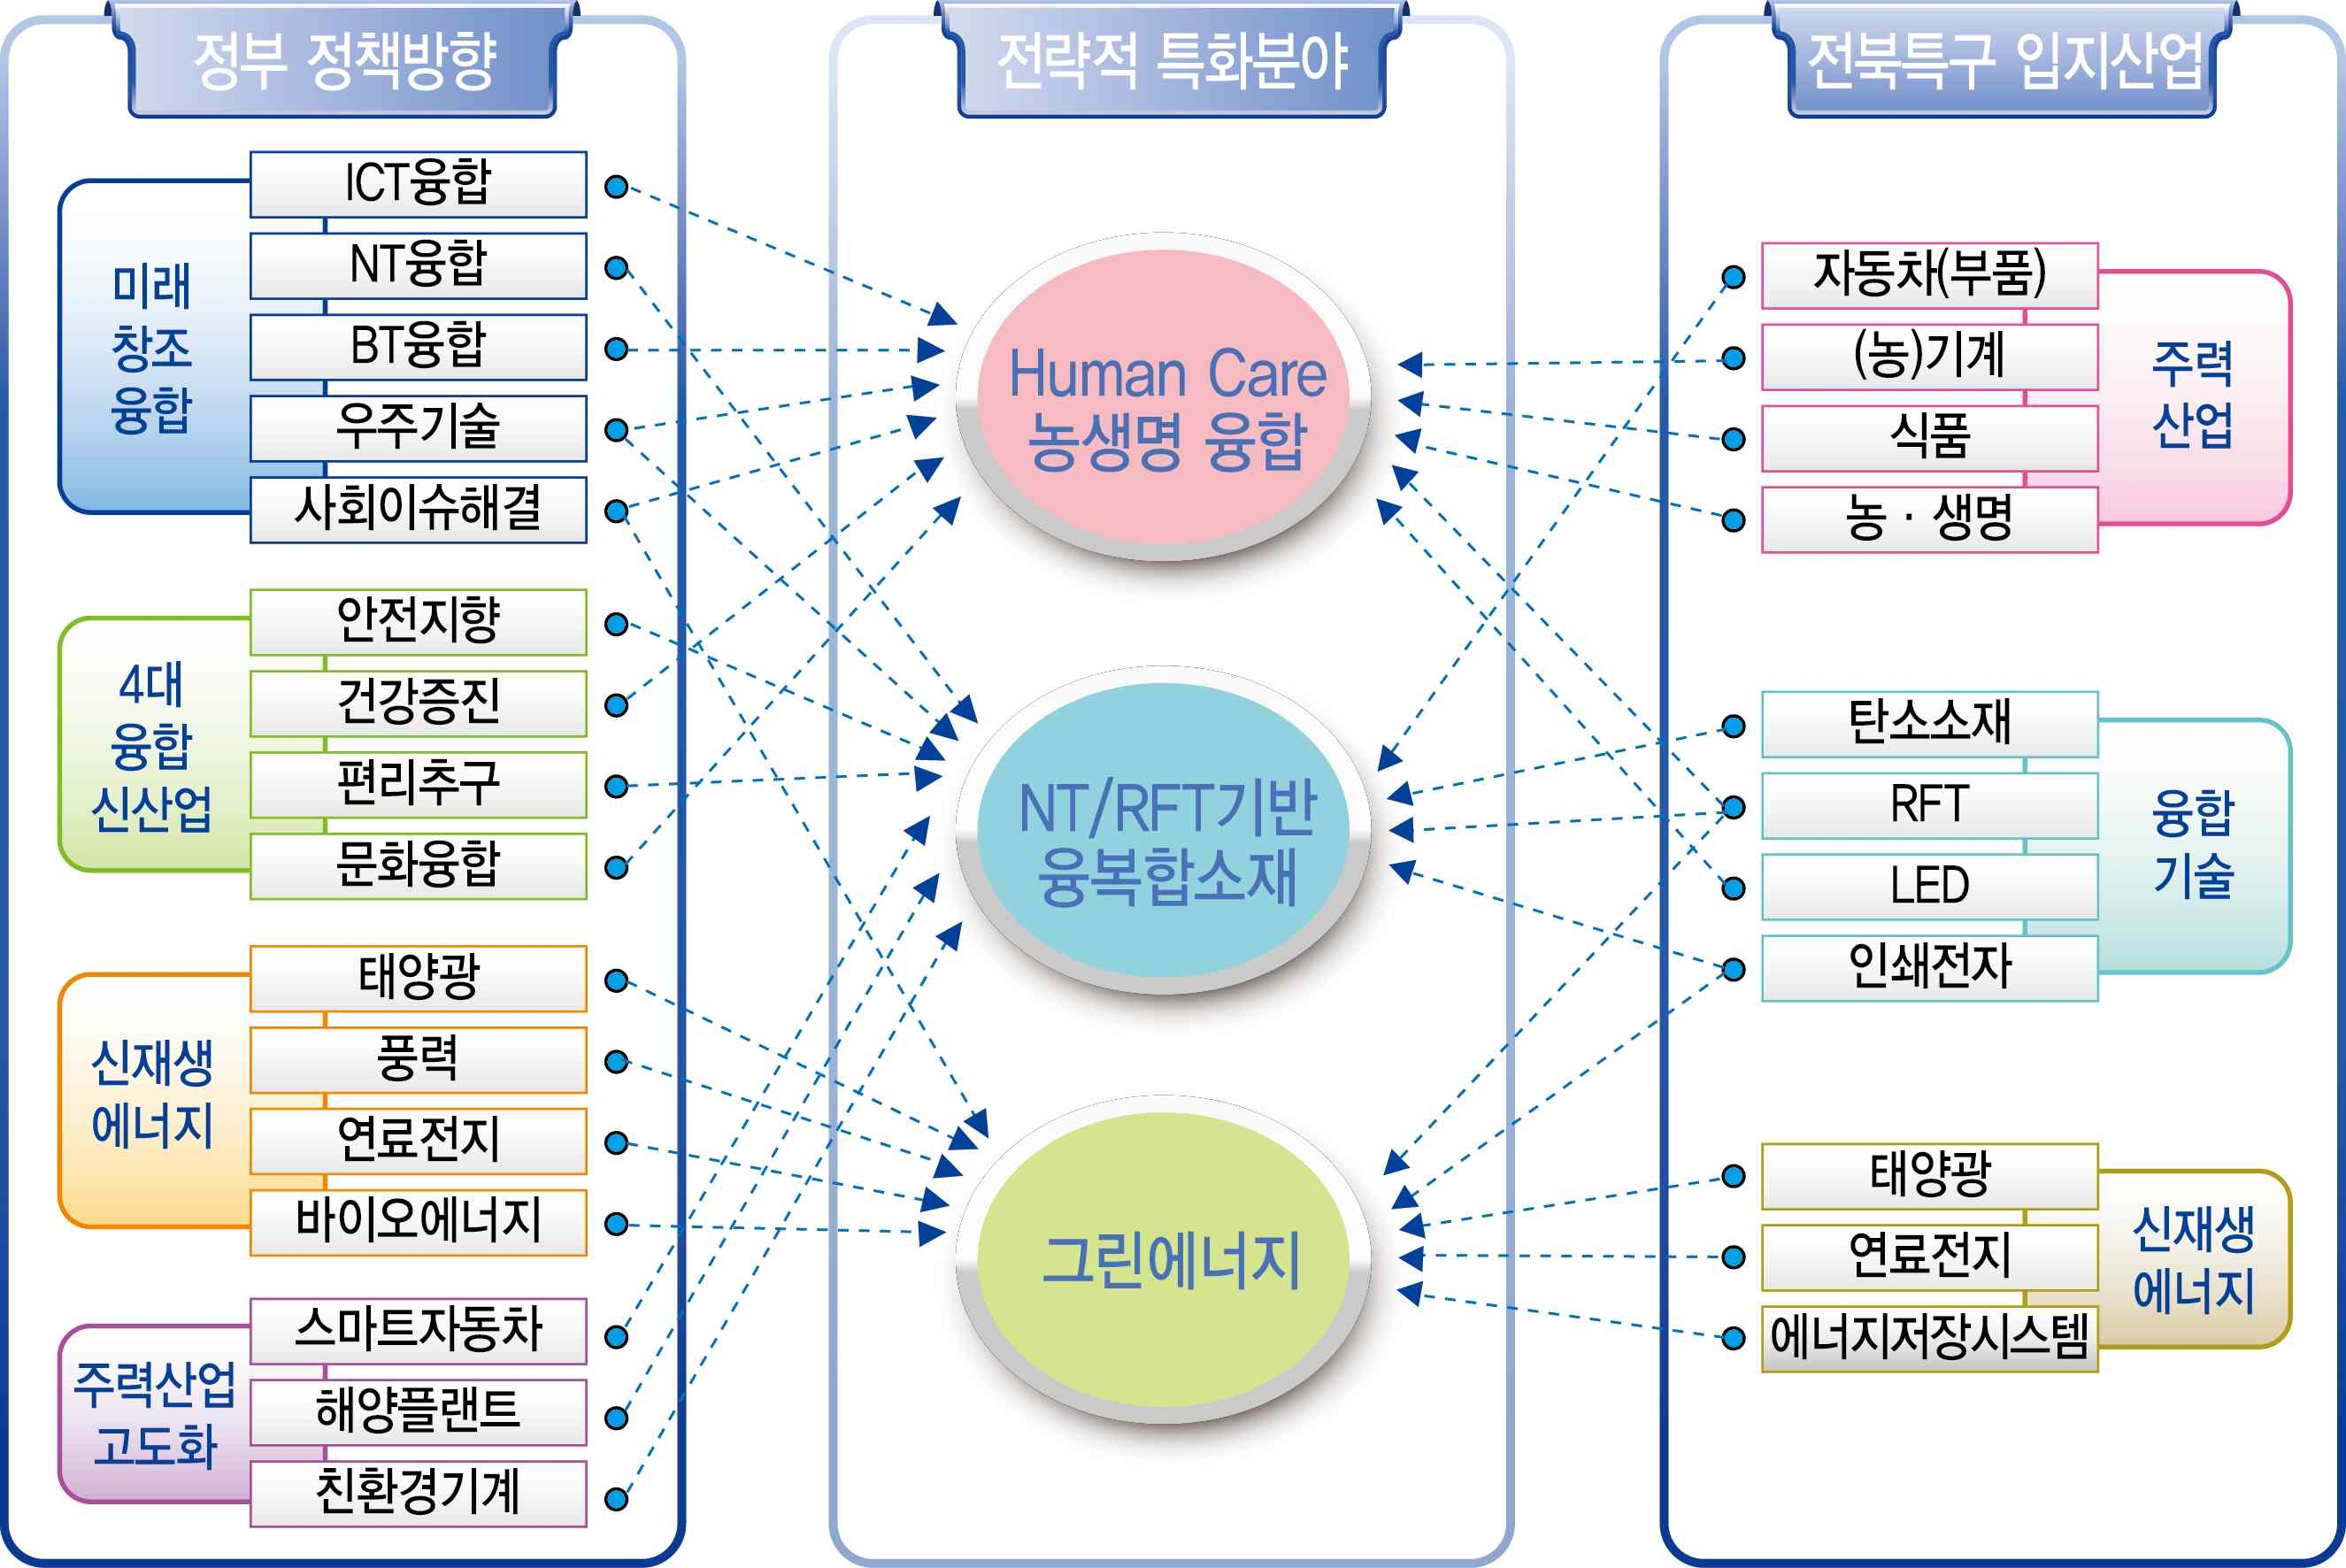 전북연구개발특구의 전략적 특화분야와 정부정책/지역산업과 연계성